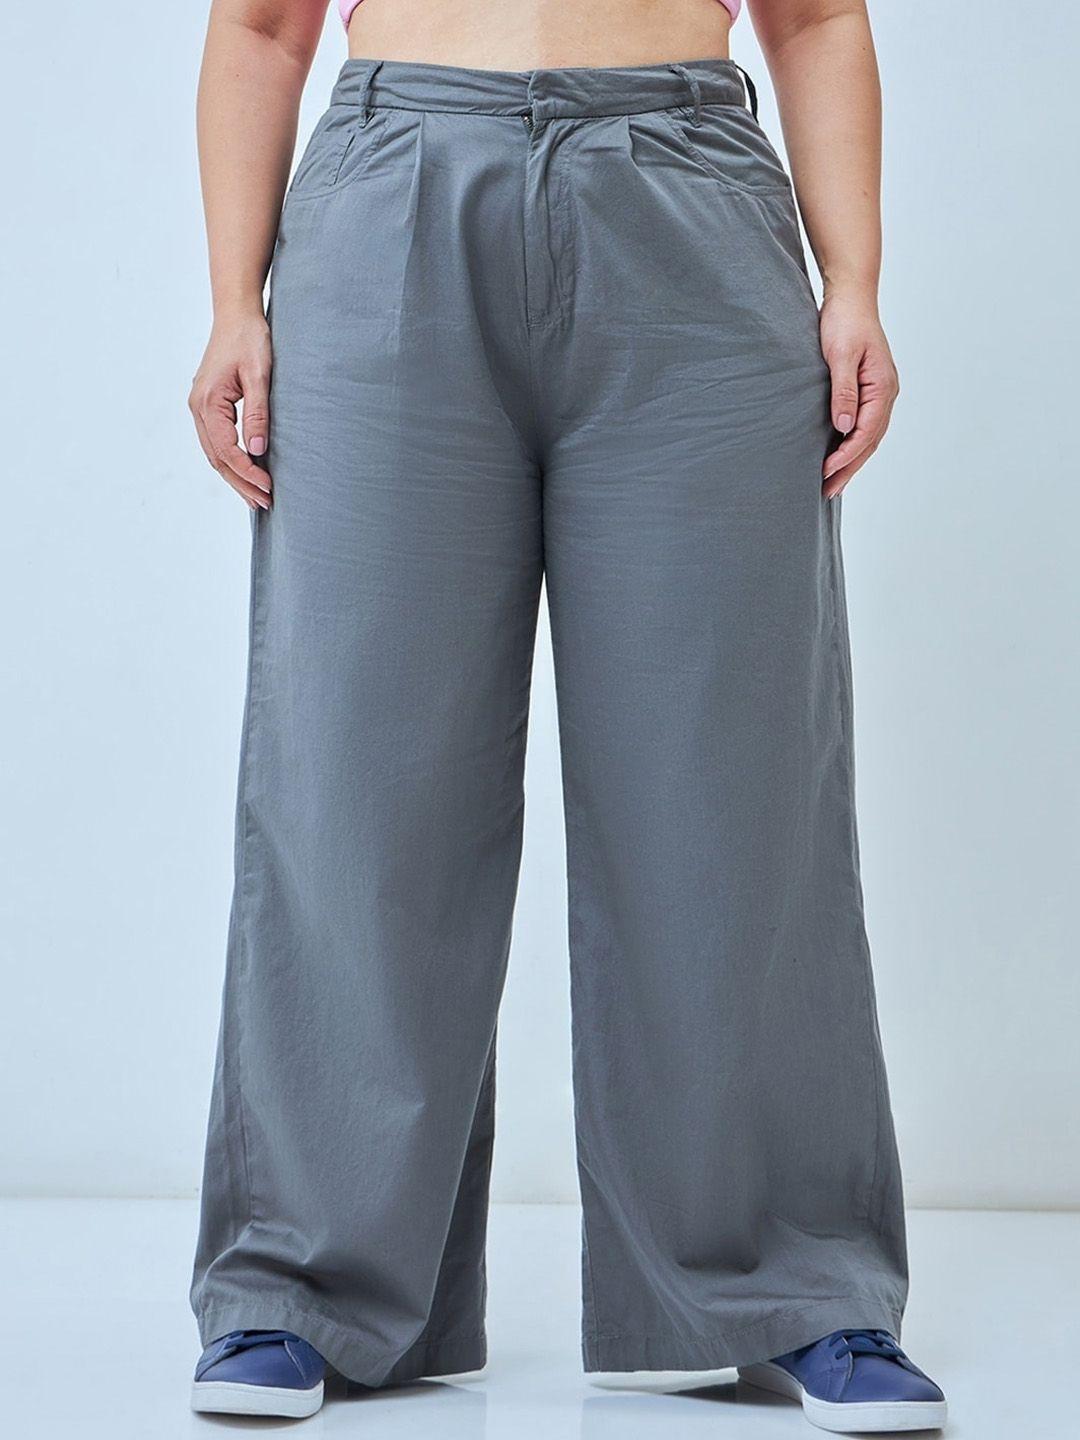 bewakoof plus women plus size super loose fit mid-rise cotton parallel trousers